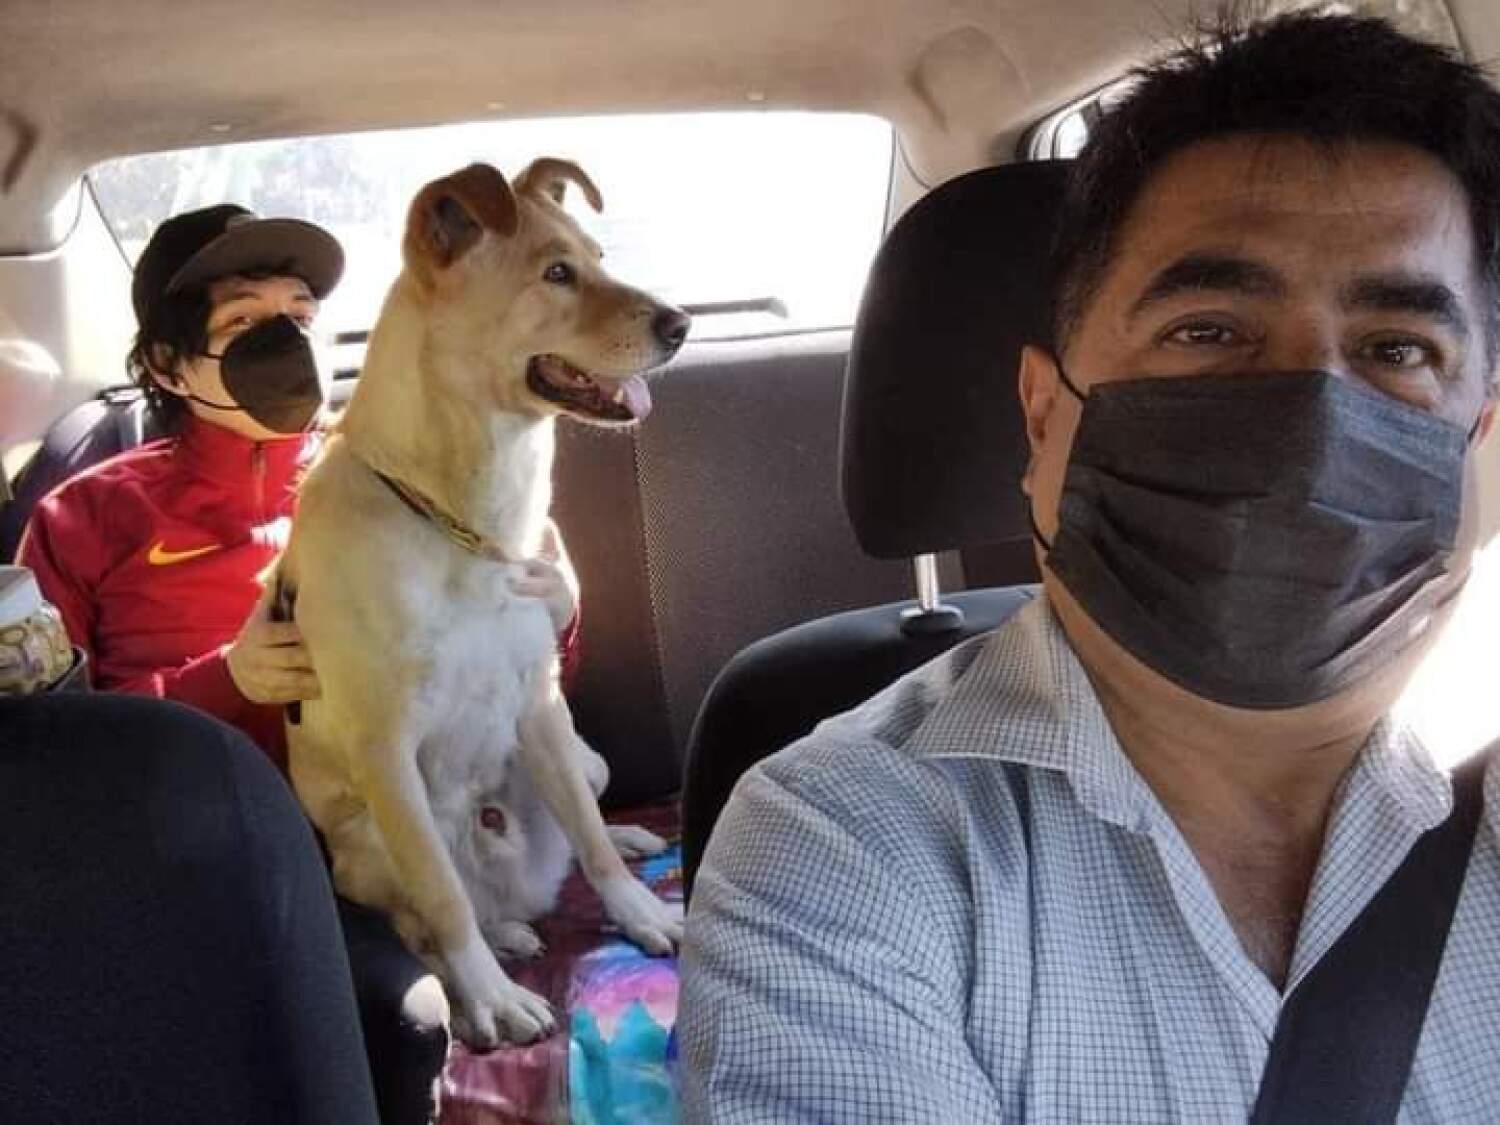 Chofer de taxi se convierte en la sensación por admitir viajes con mascotas